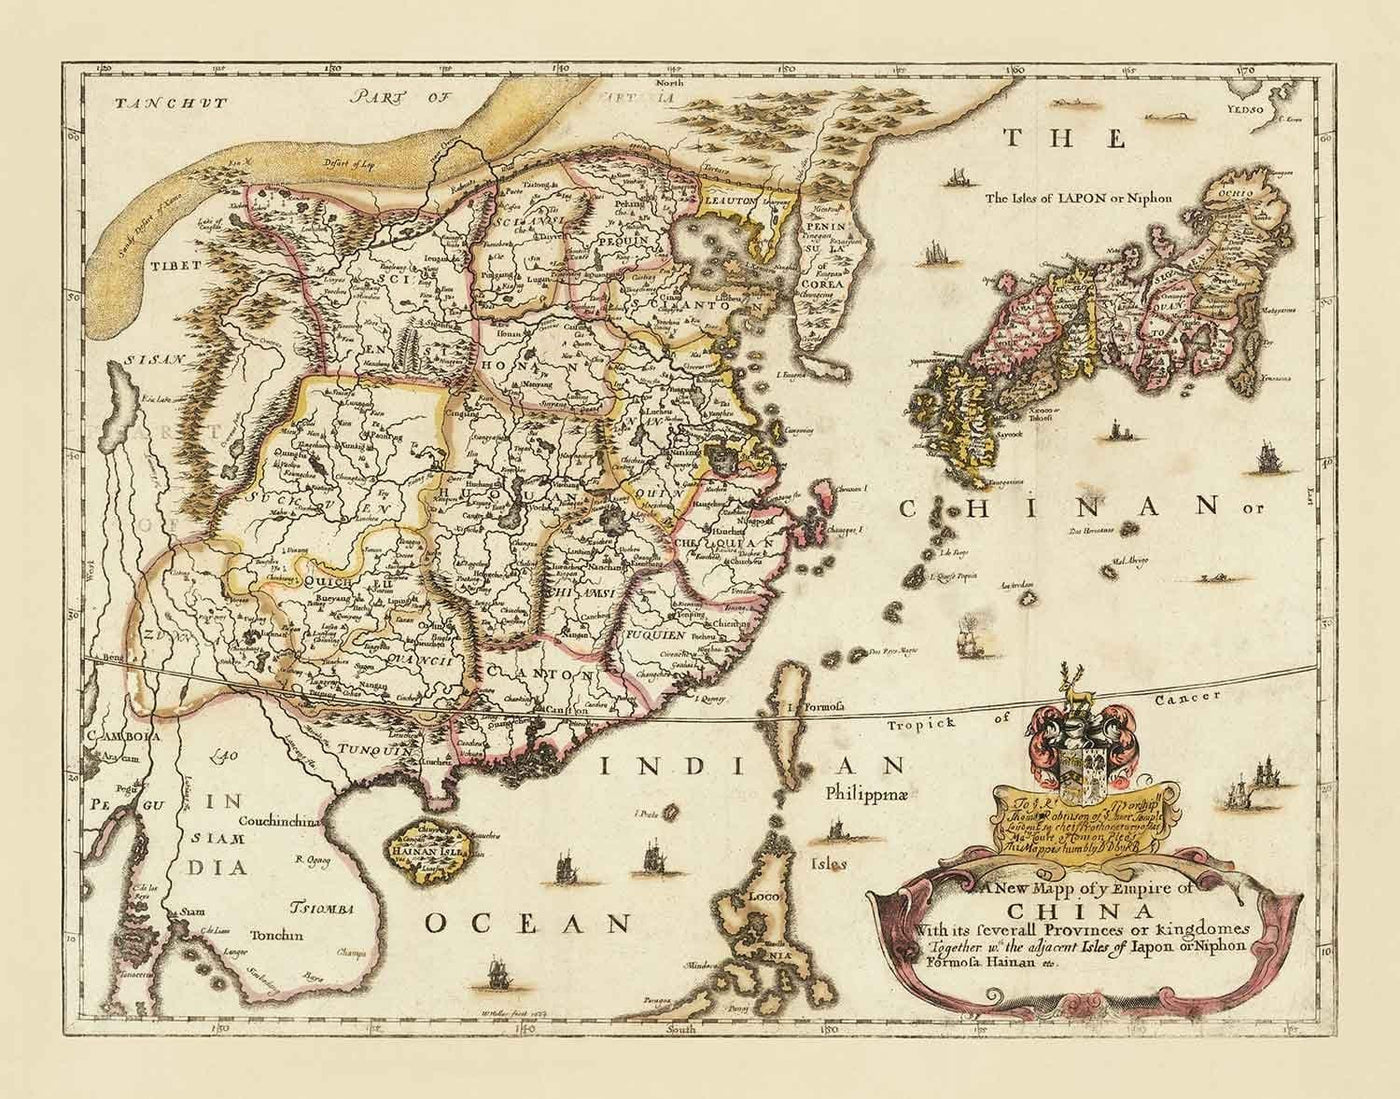 Mapa antiguo de China y Asia Oriental, 1669 por Blome - Gran Muralla, Cantones, Corea, Japón, Vietnam, Tailandia, Camboya